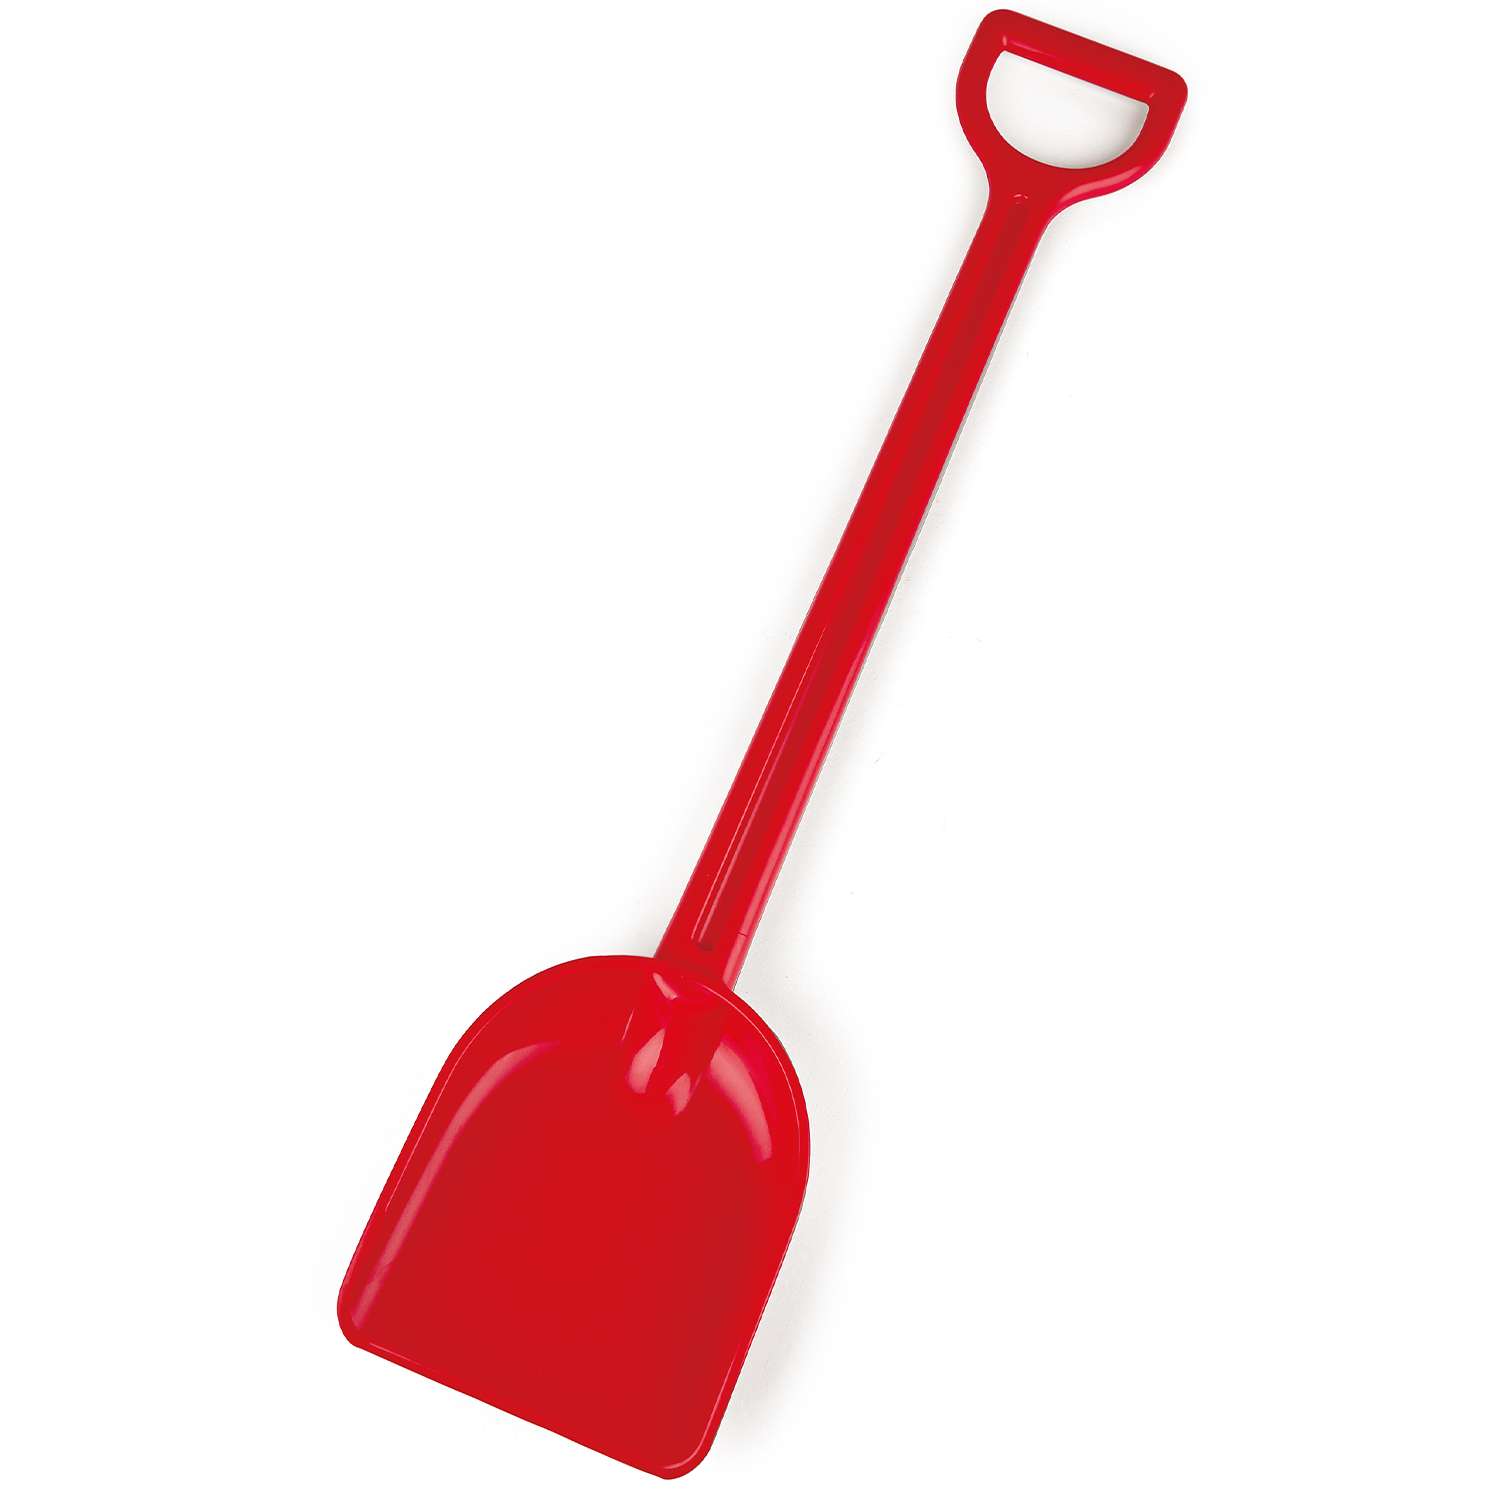 Игрушка для игры на пляже HAPE детская красная лопата для песка 55 см. - фото 2